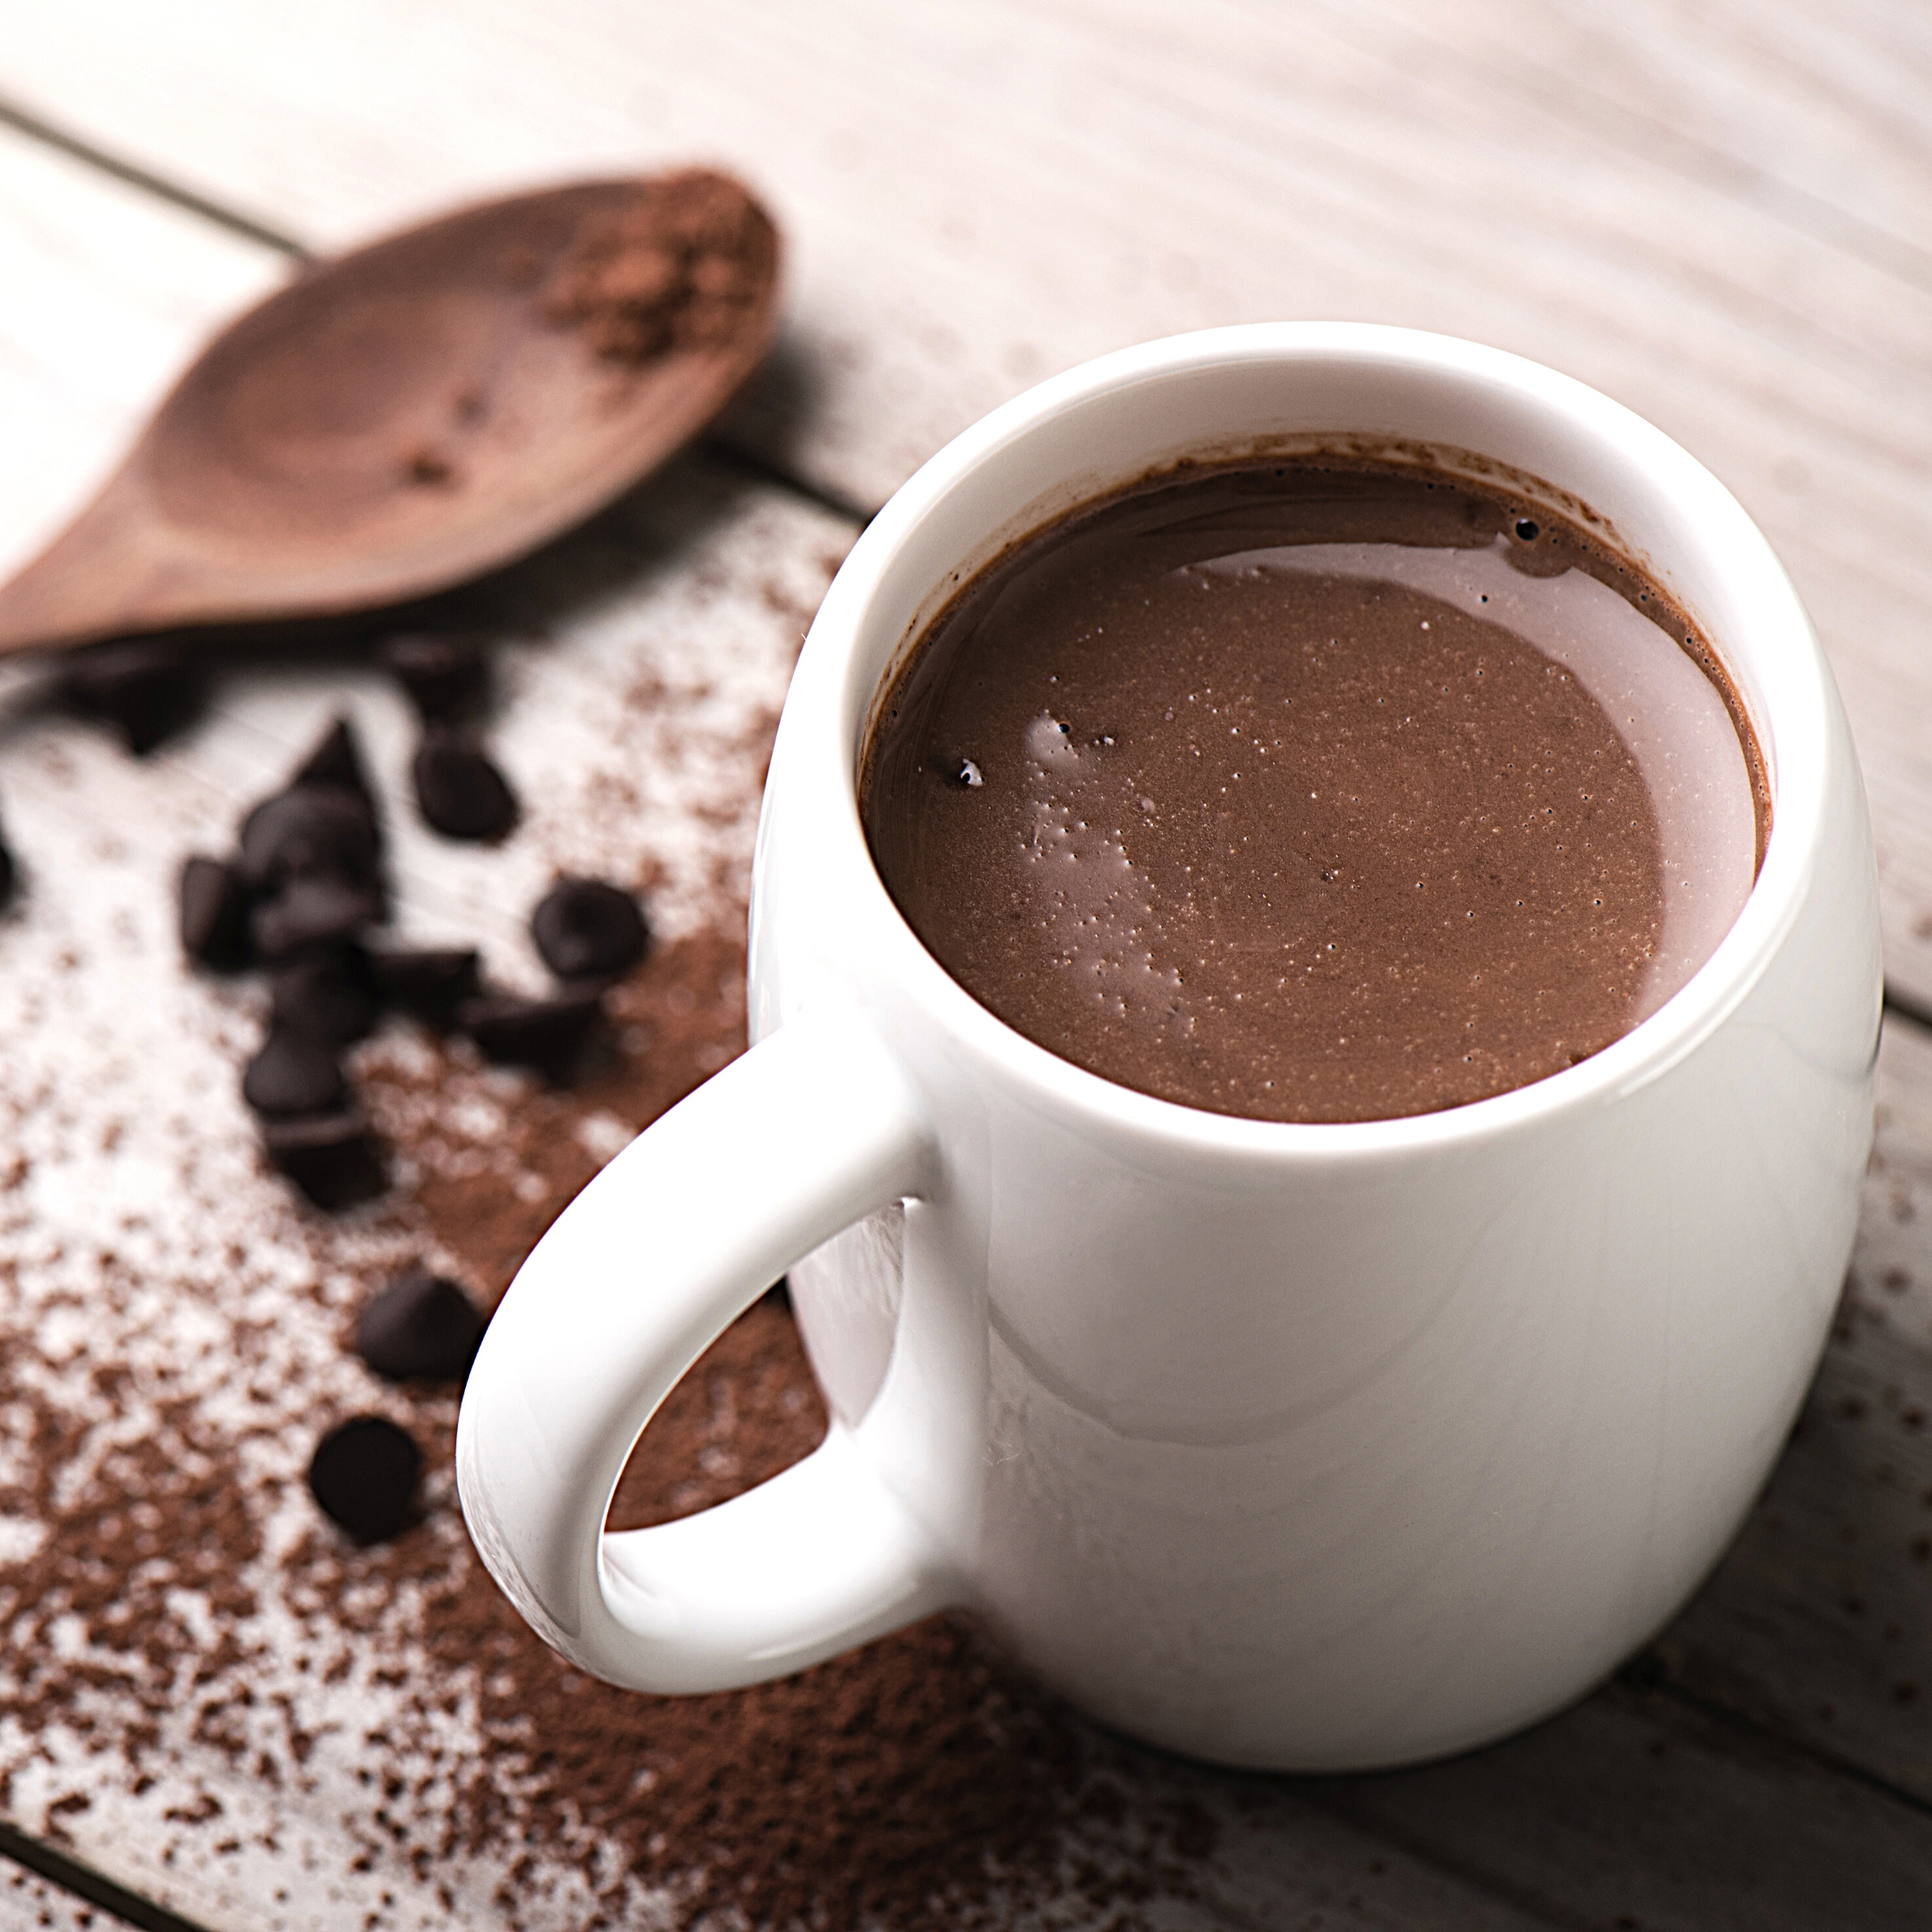 Keto Hot Chocolate